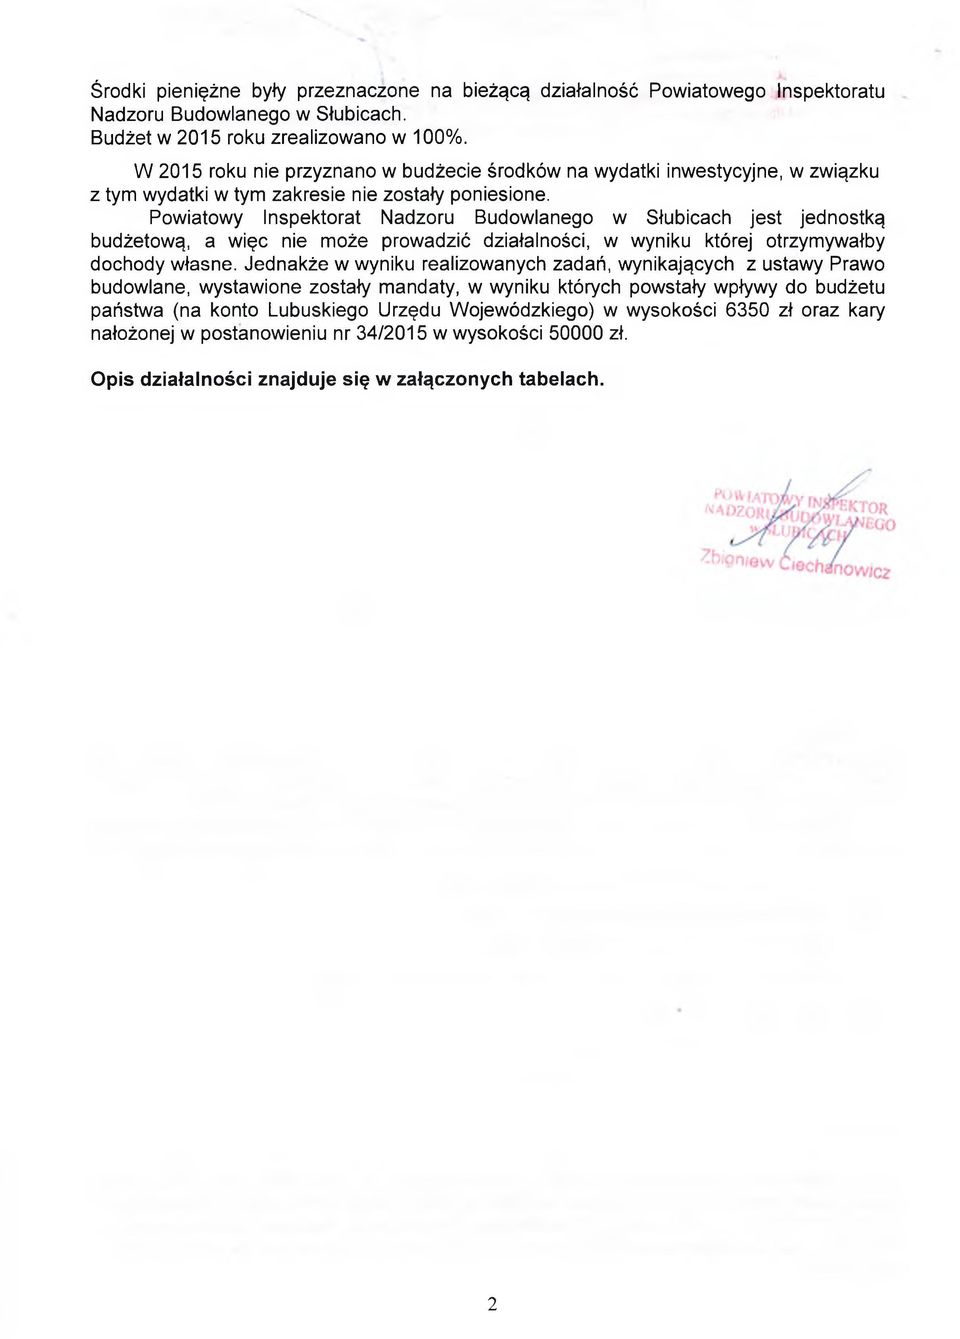 Powiatowy Inspektorat Nadzoru Budowlanego w Słubicach jest jednostką budżetową, a więc nie może prowadzić działalności, w wyniku której otrzymywałby dochody własne.